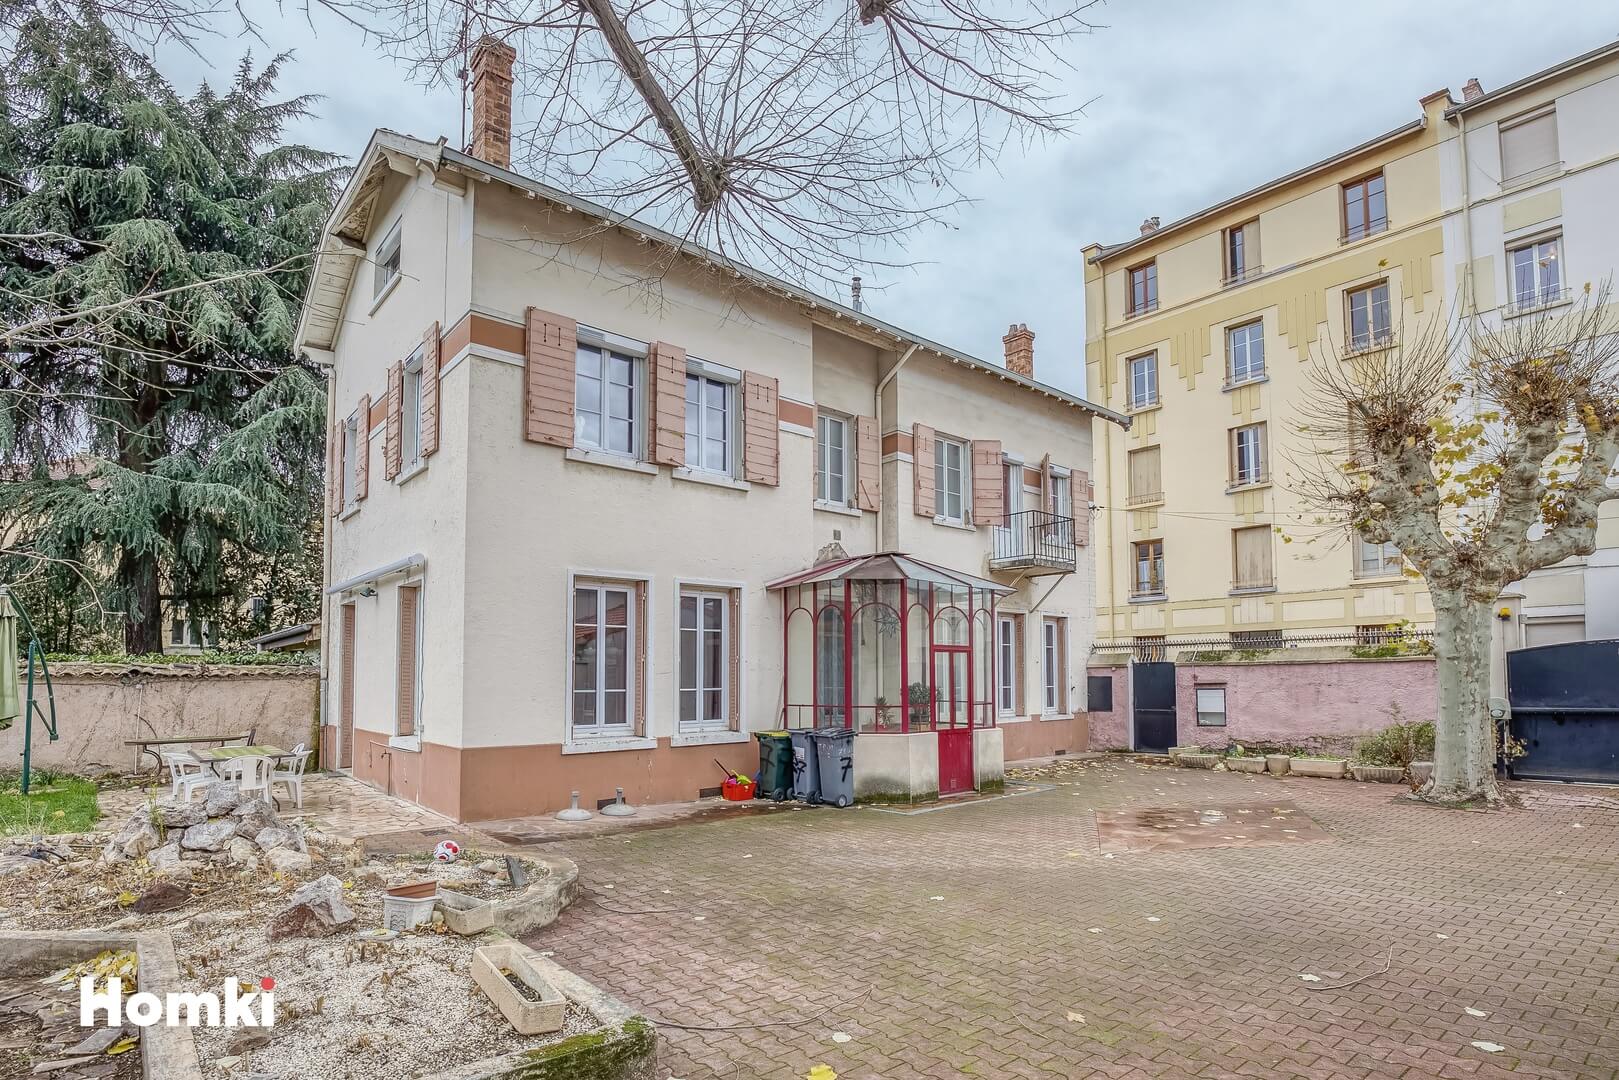 Homki - Vente Maison/villa  de 300.0 m² à Lyon 69003